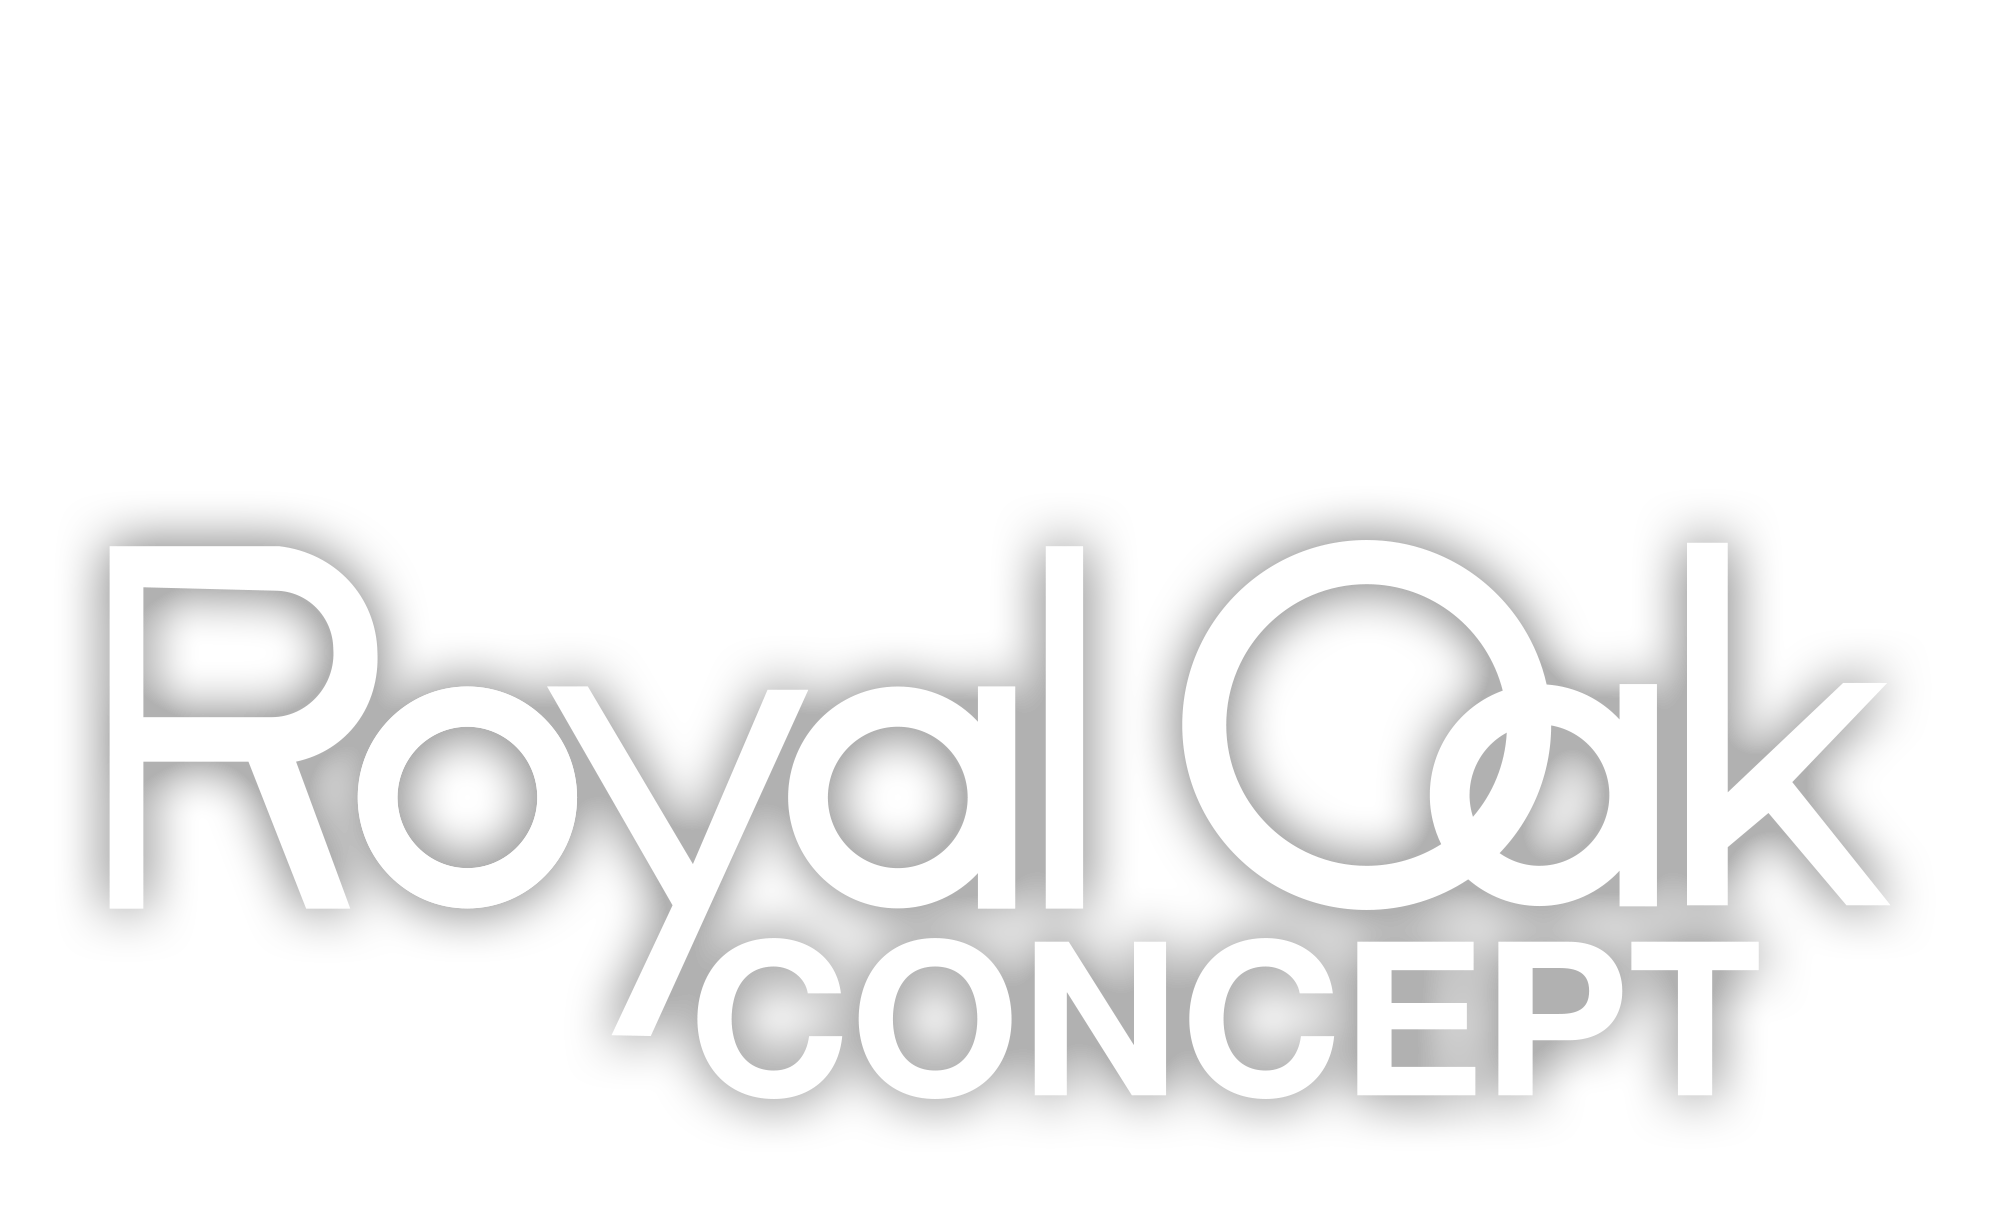 Collezione Royal Oak Concept